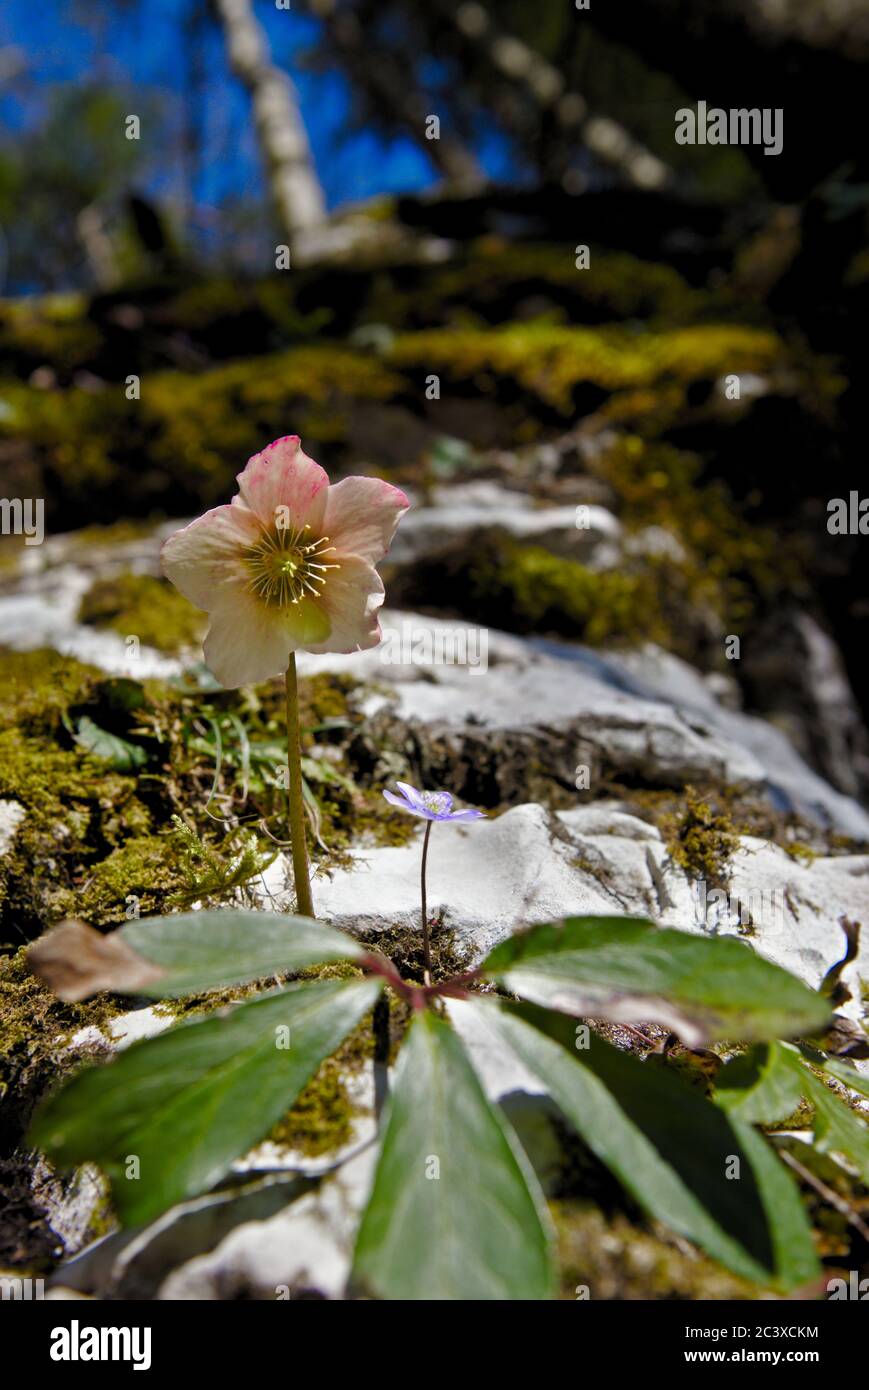 Blume auf einem Felsen im Wald Stock Photo